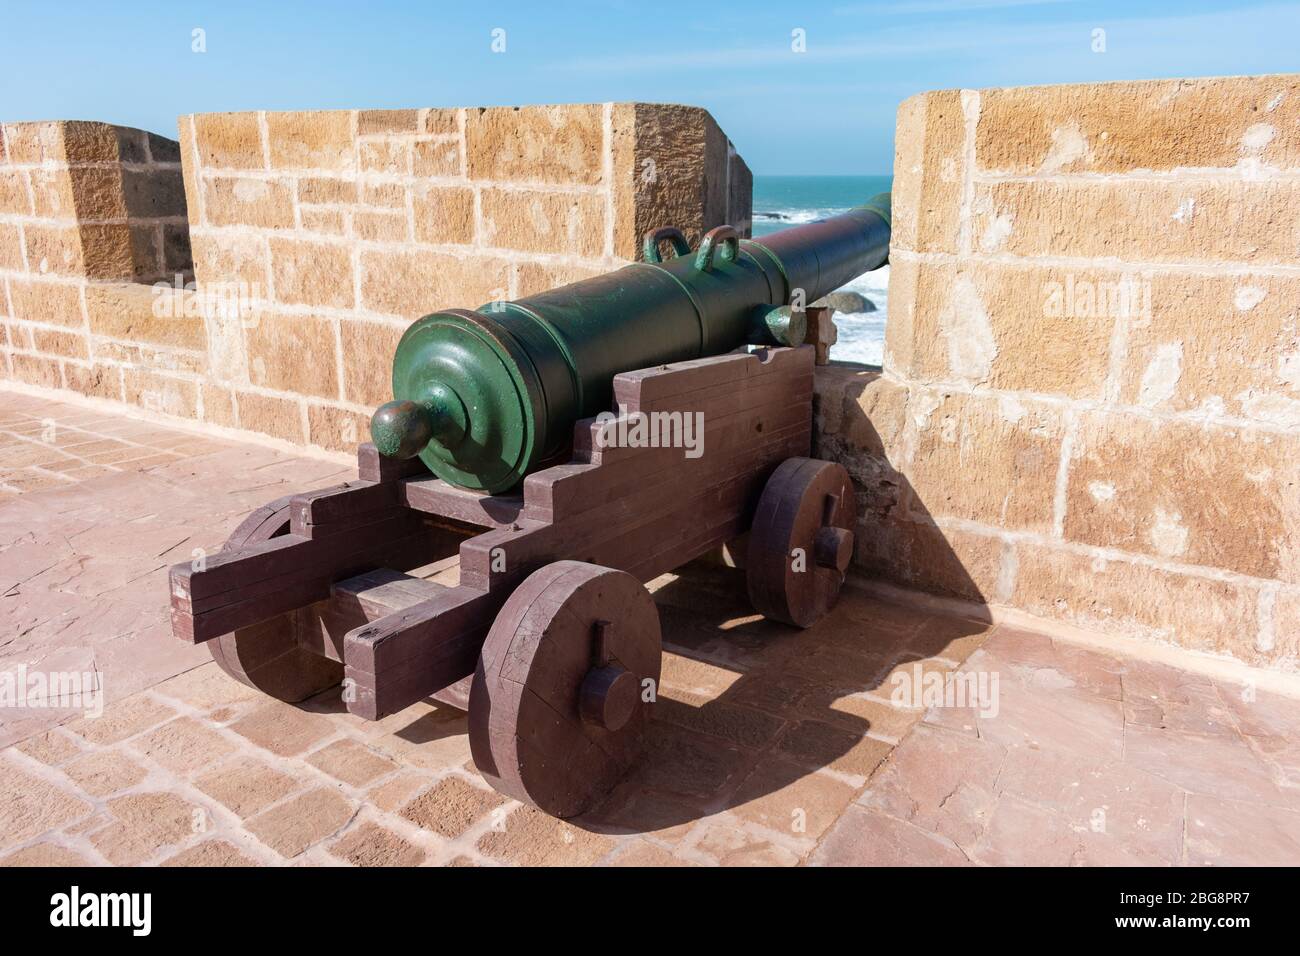 Un Old Cannon sur les remparts fortifiés d'Essaouira Maroc Banque D'Images